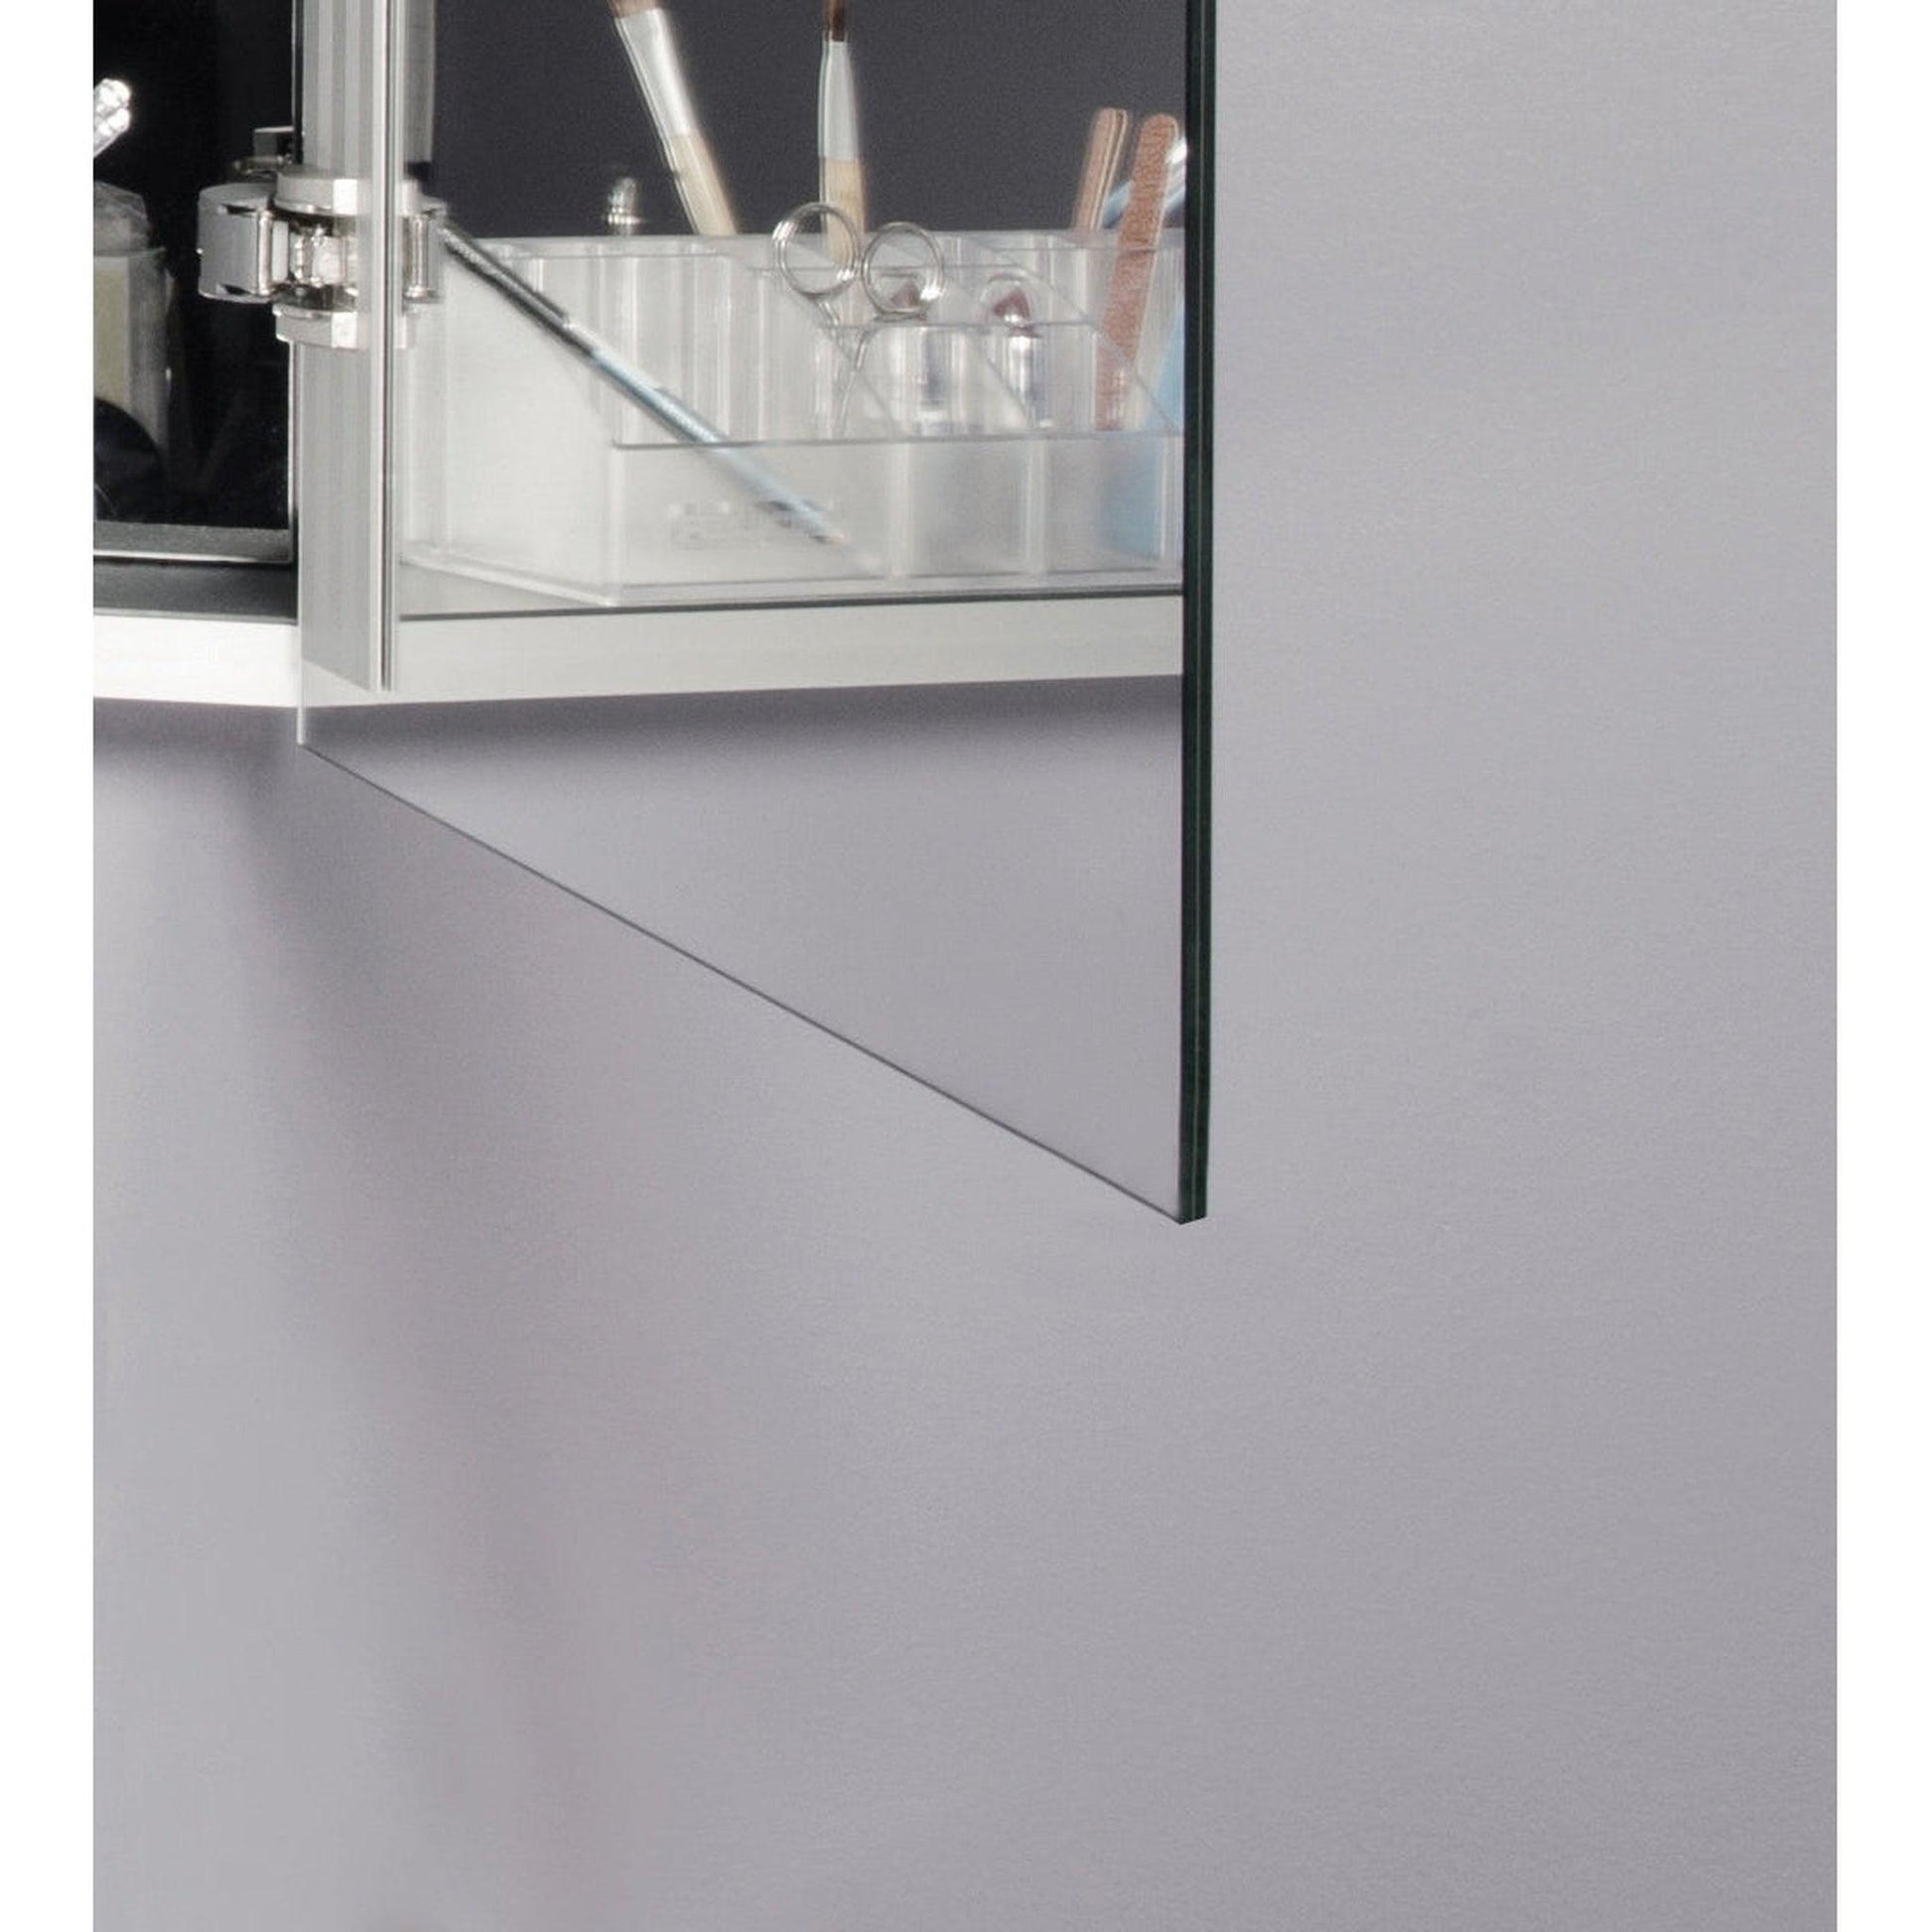 Sidler Xamo 59" x 30" 3000K 3 Mirror Doors Medicine Cabinet